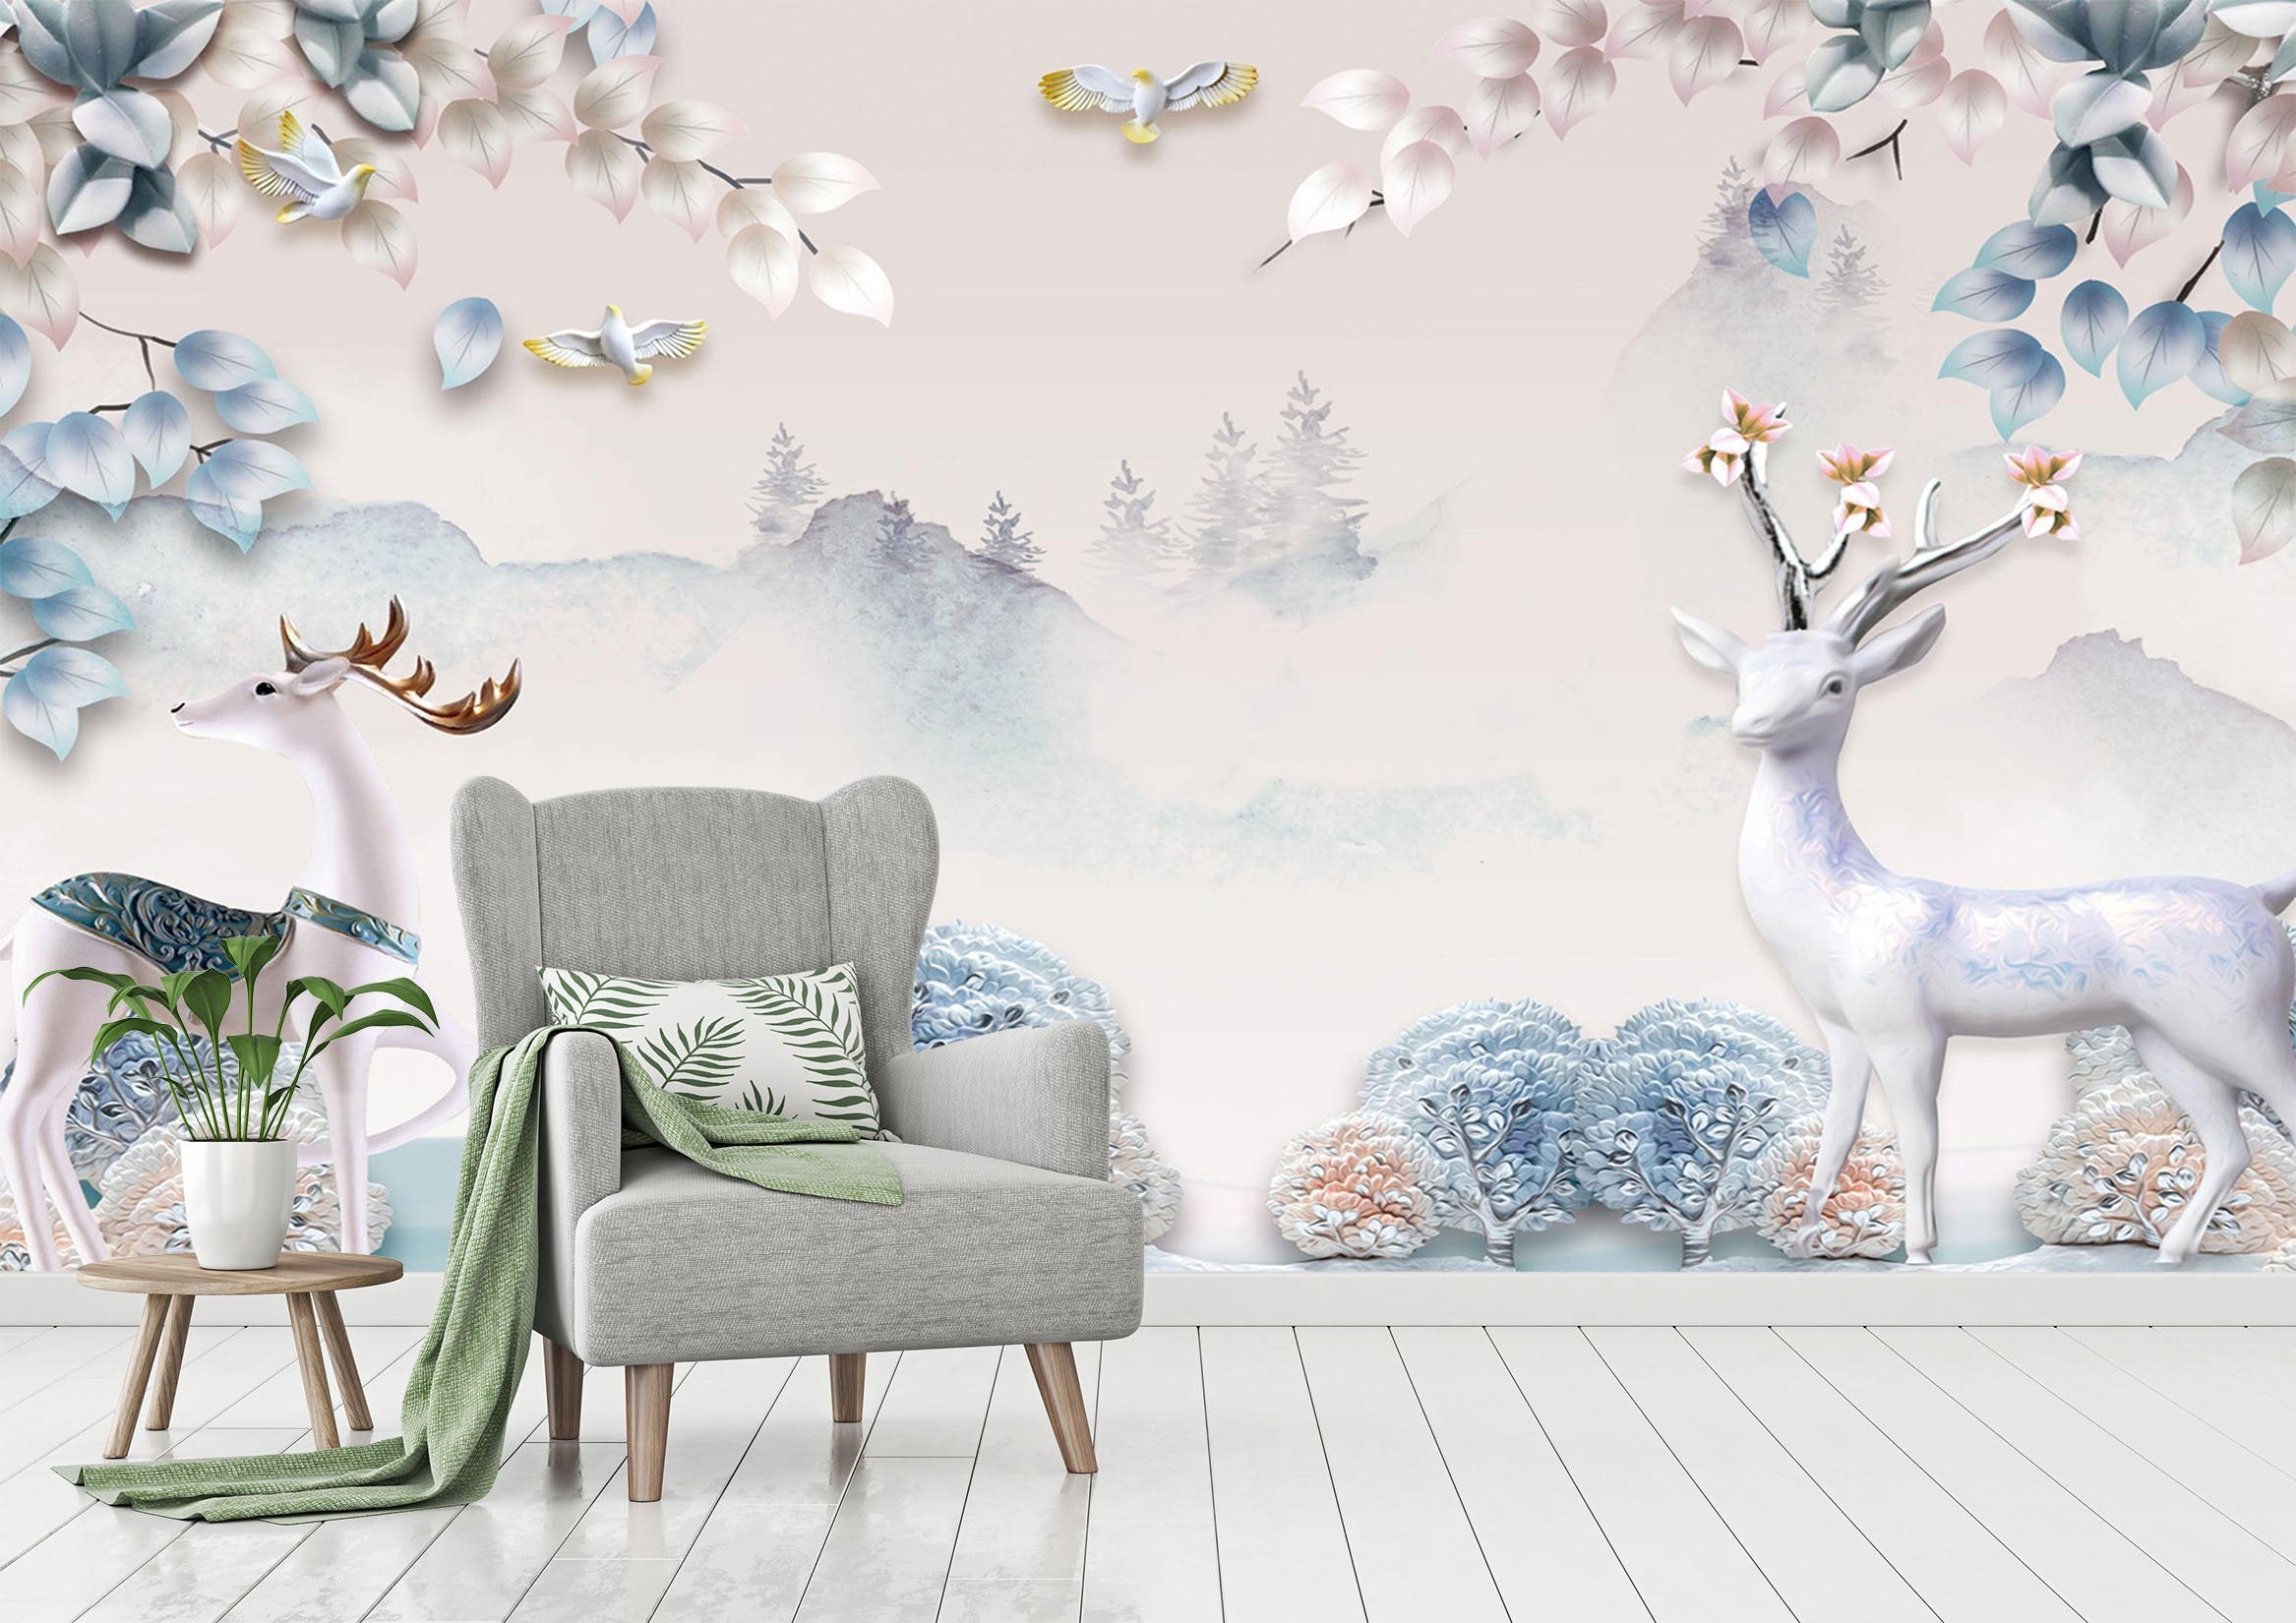 3D Elegant White Deer 469 Wallpaper AJ Wallpaper 2 